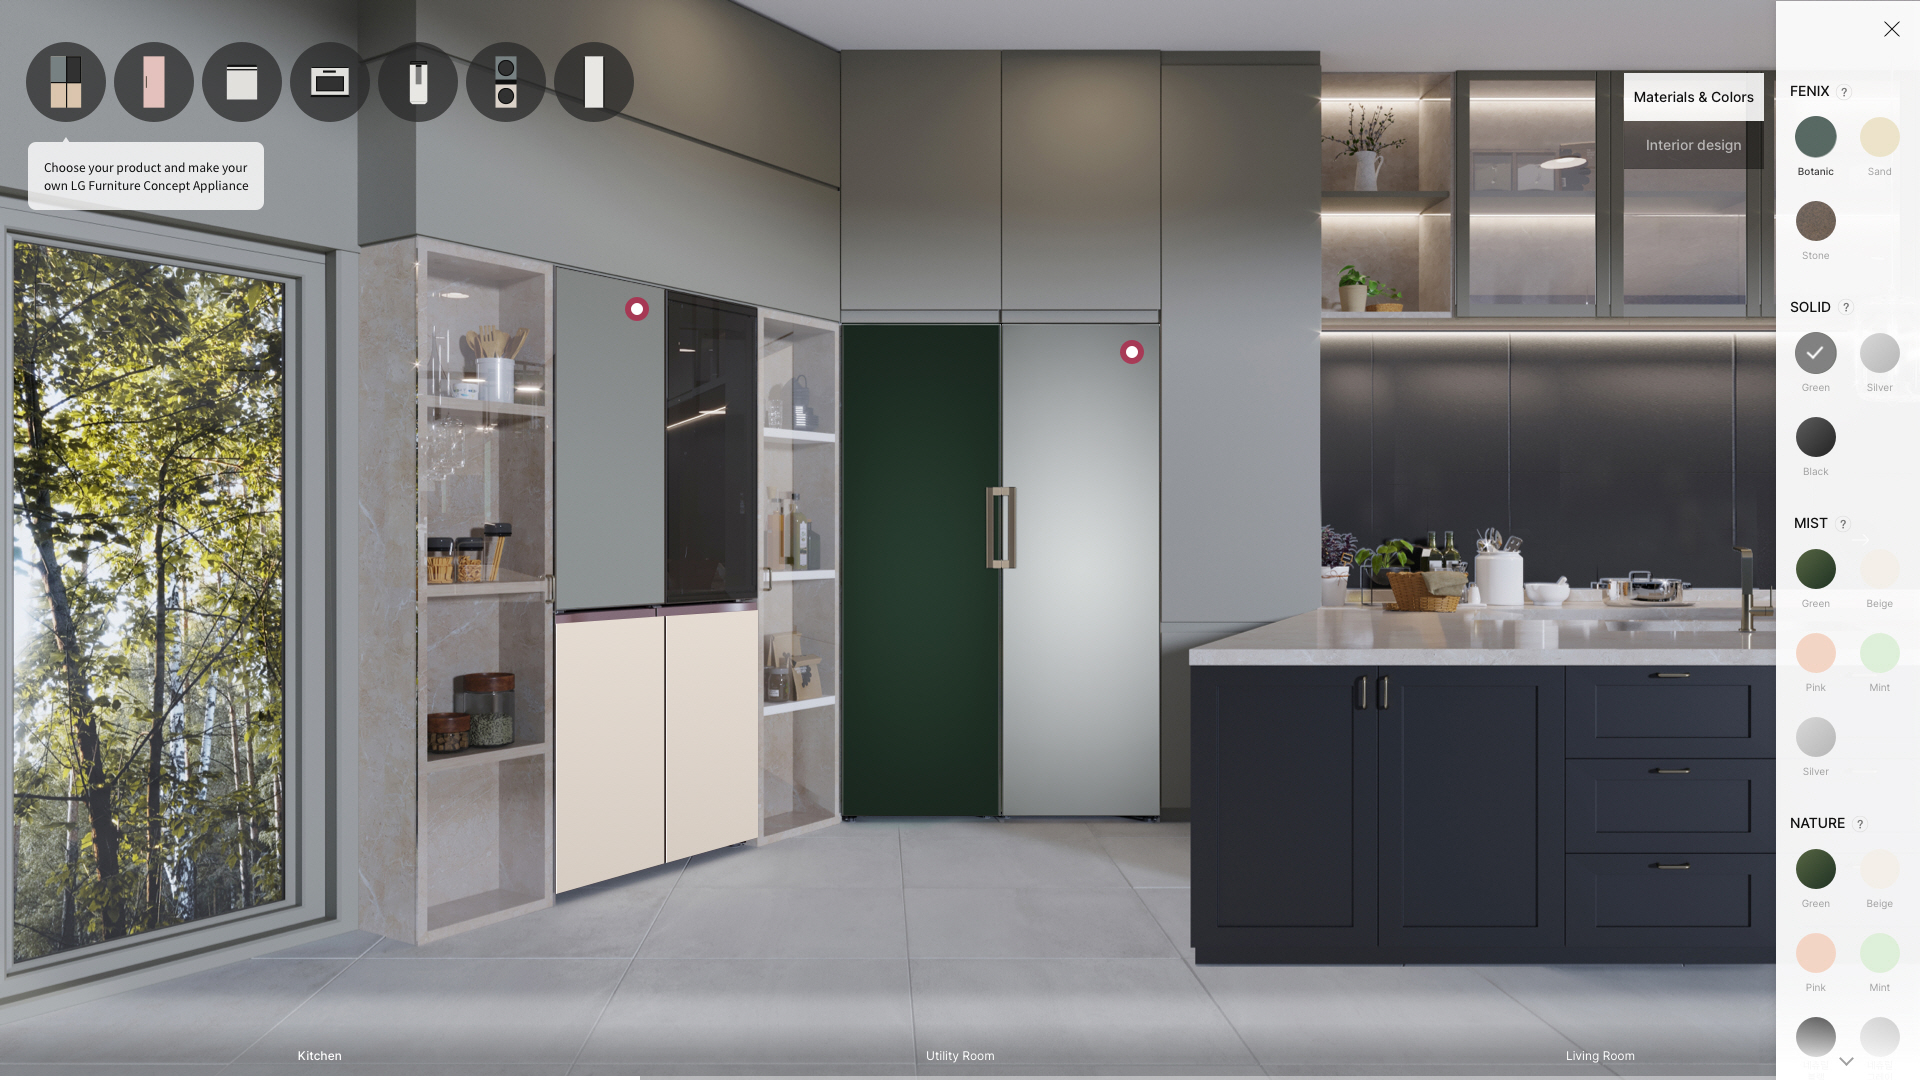 LG Furniture Concept Appliances at CES 2021 01